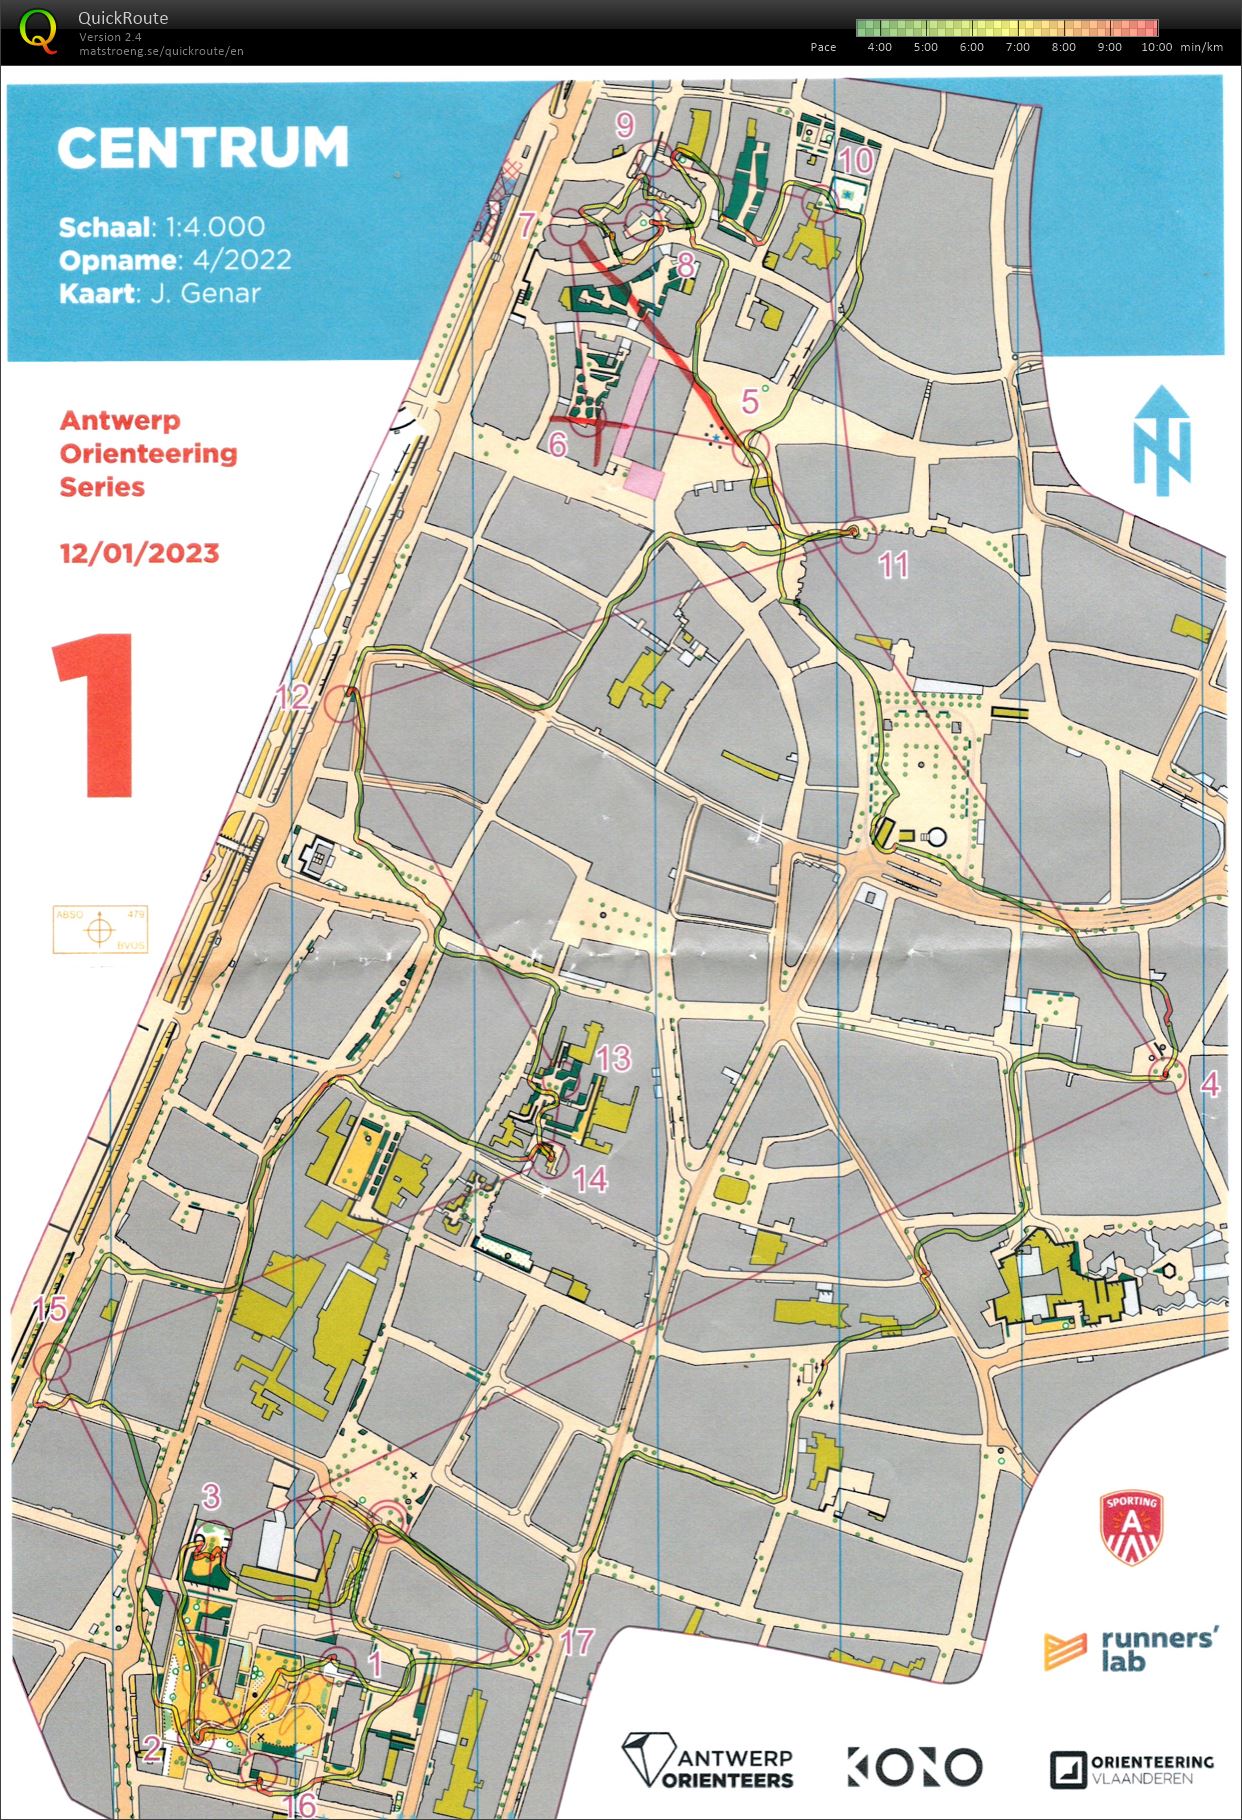 Antwerp Orienteering Series - Centrum - Lang (12/01/2023)